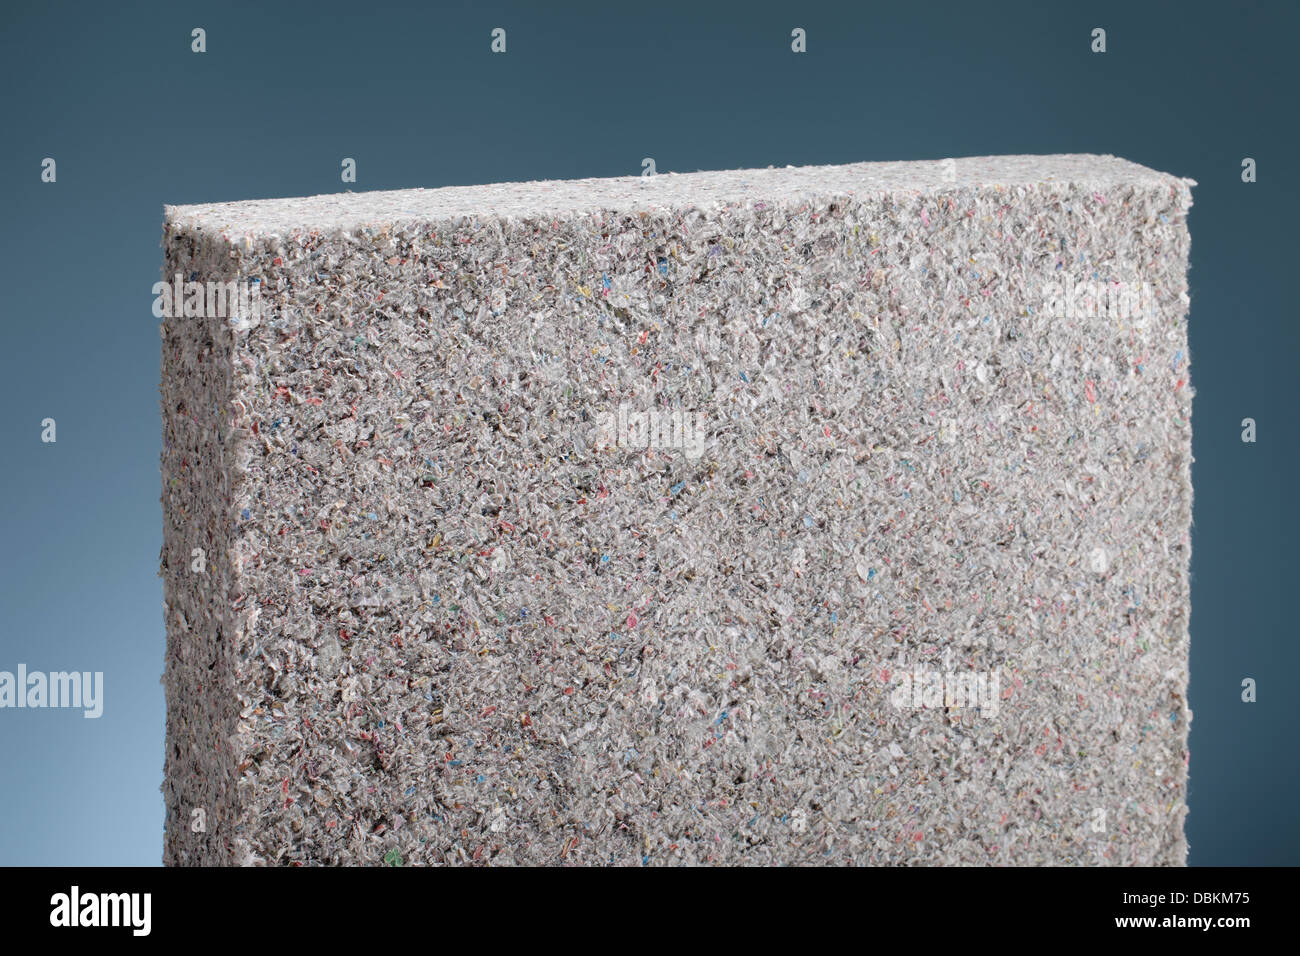 L'isolation de cellulose panneau batt en papier journal recyclé, utilisé comme isolant thermique du bâtiment. Banque D'Images